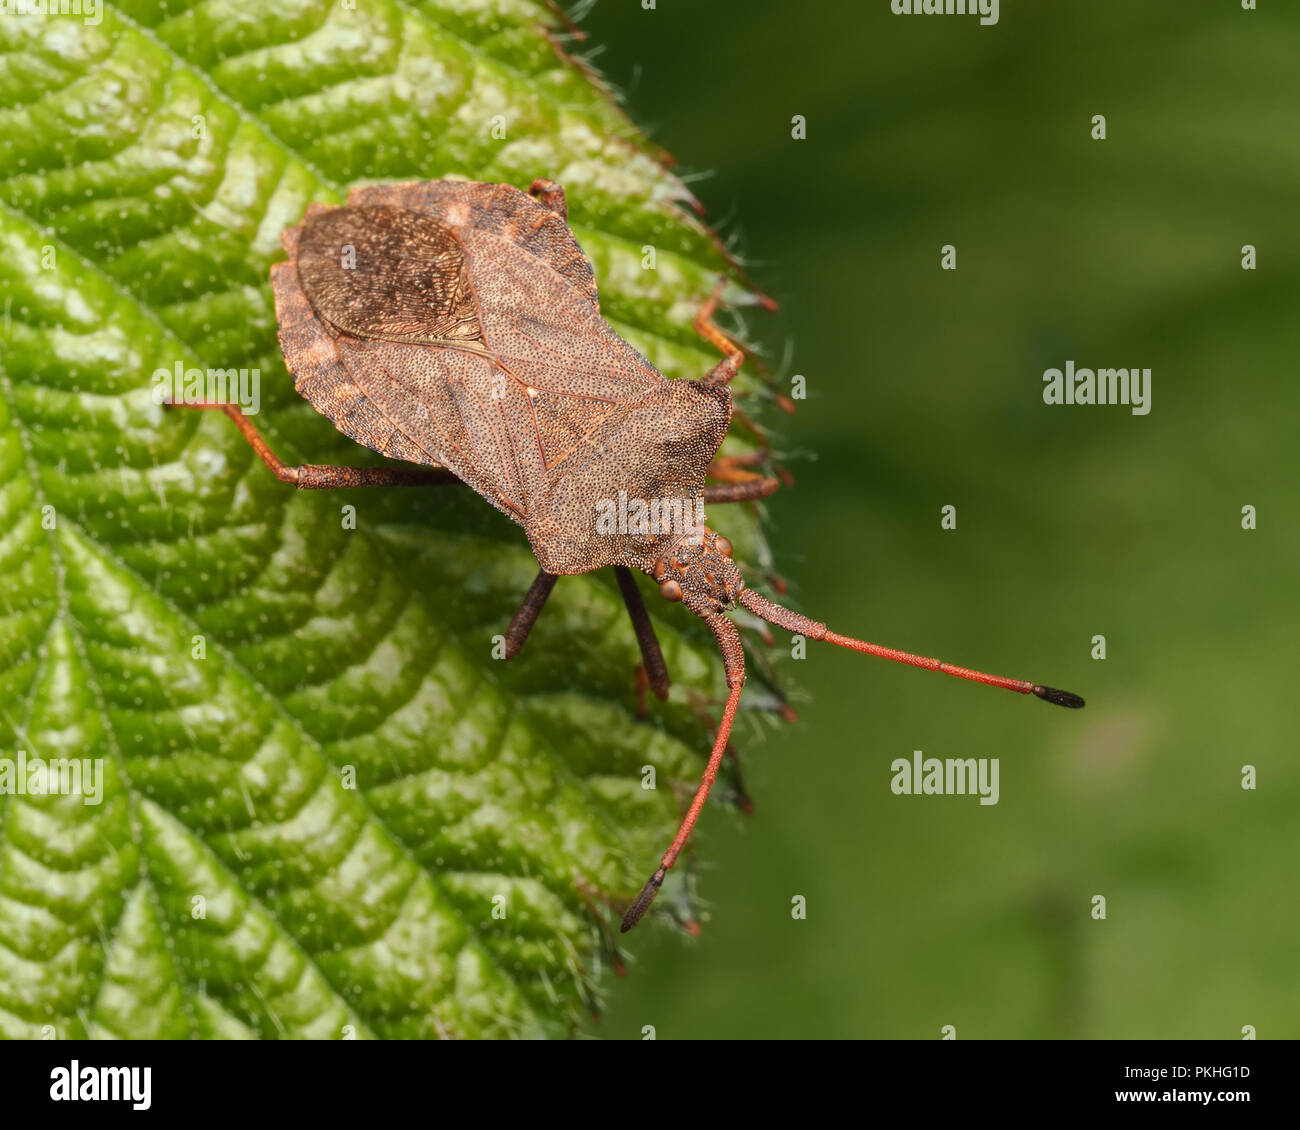 Dock Bug (Coreus marginatus) perched on leaf. Tipperary, Ireland Stock Photo